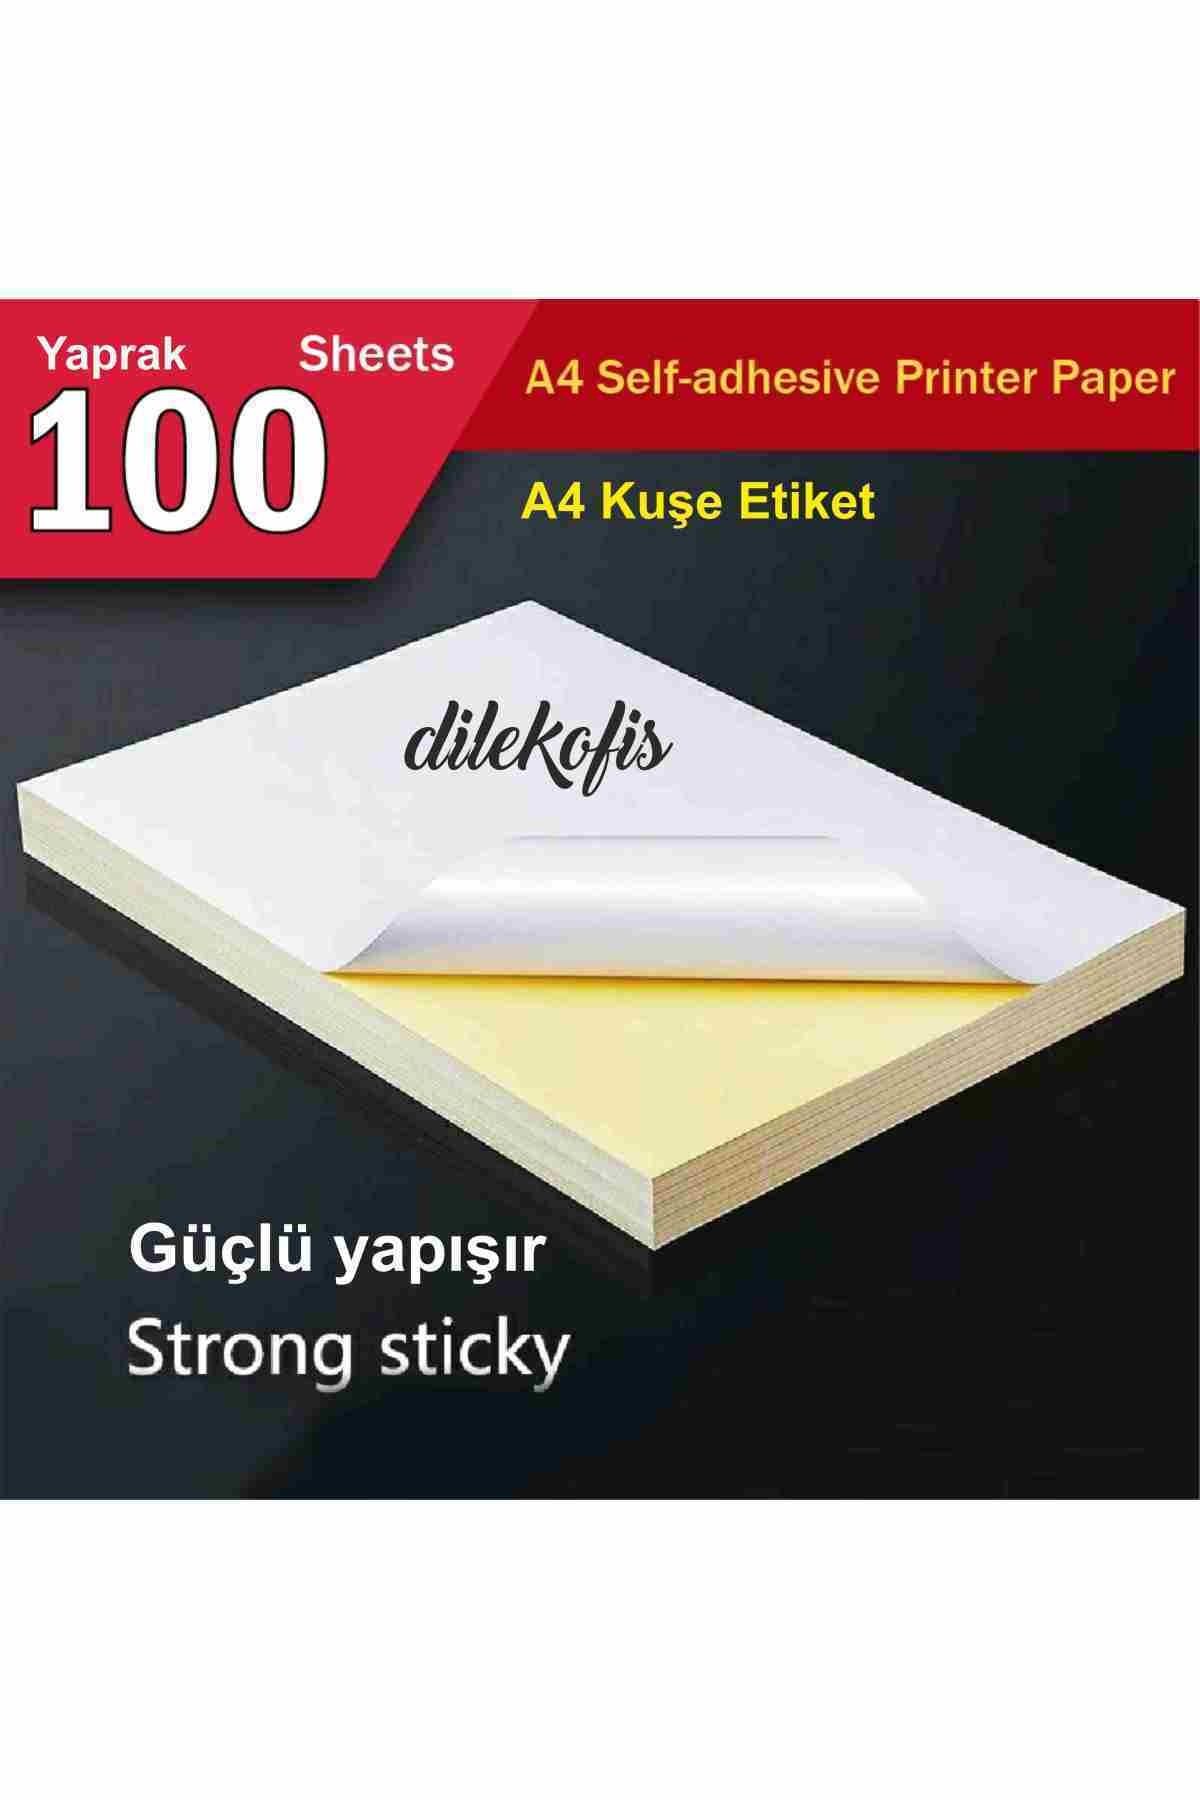 DİLEKOFİS A4 Kuşe Etiket 100 Ad./pk.